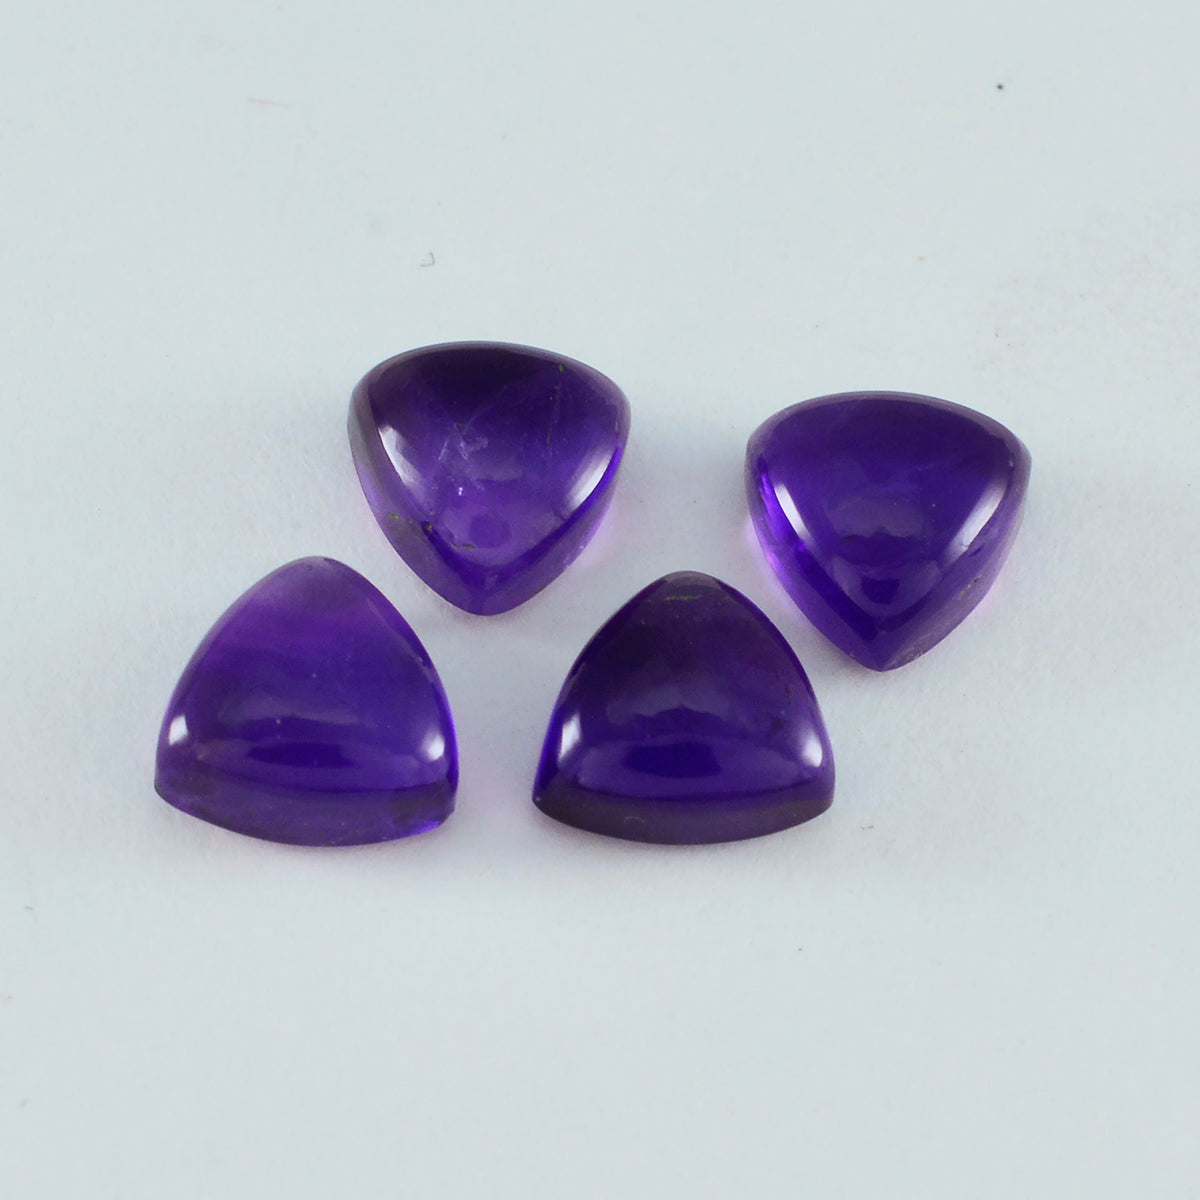 riyogems 1pc cabochon d'améthyste violet 4x4 mm forme trillion belle pierre précieuse de qualité